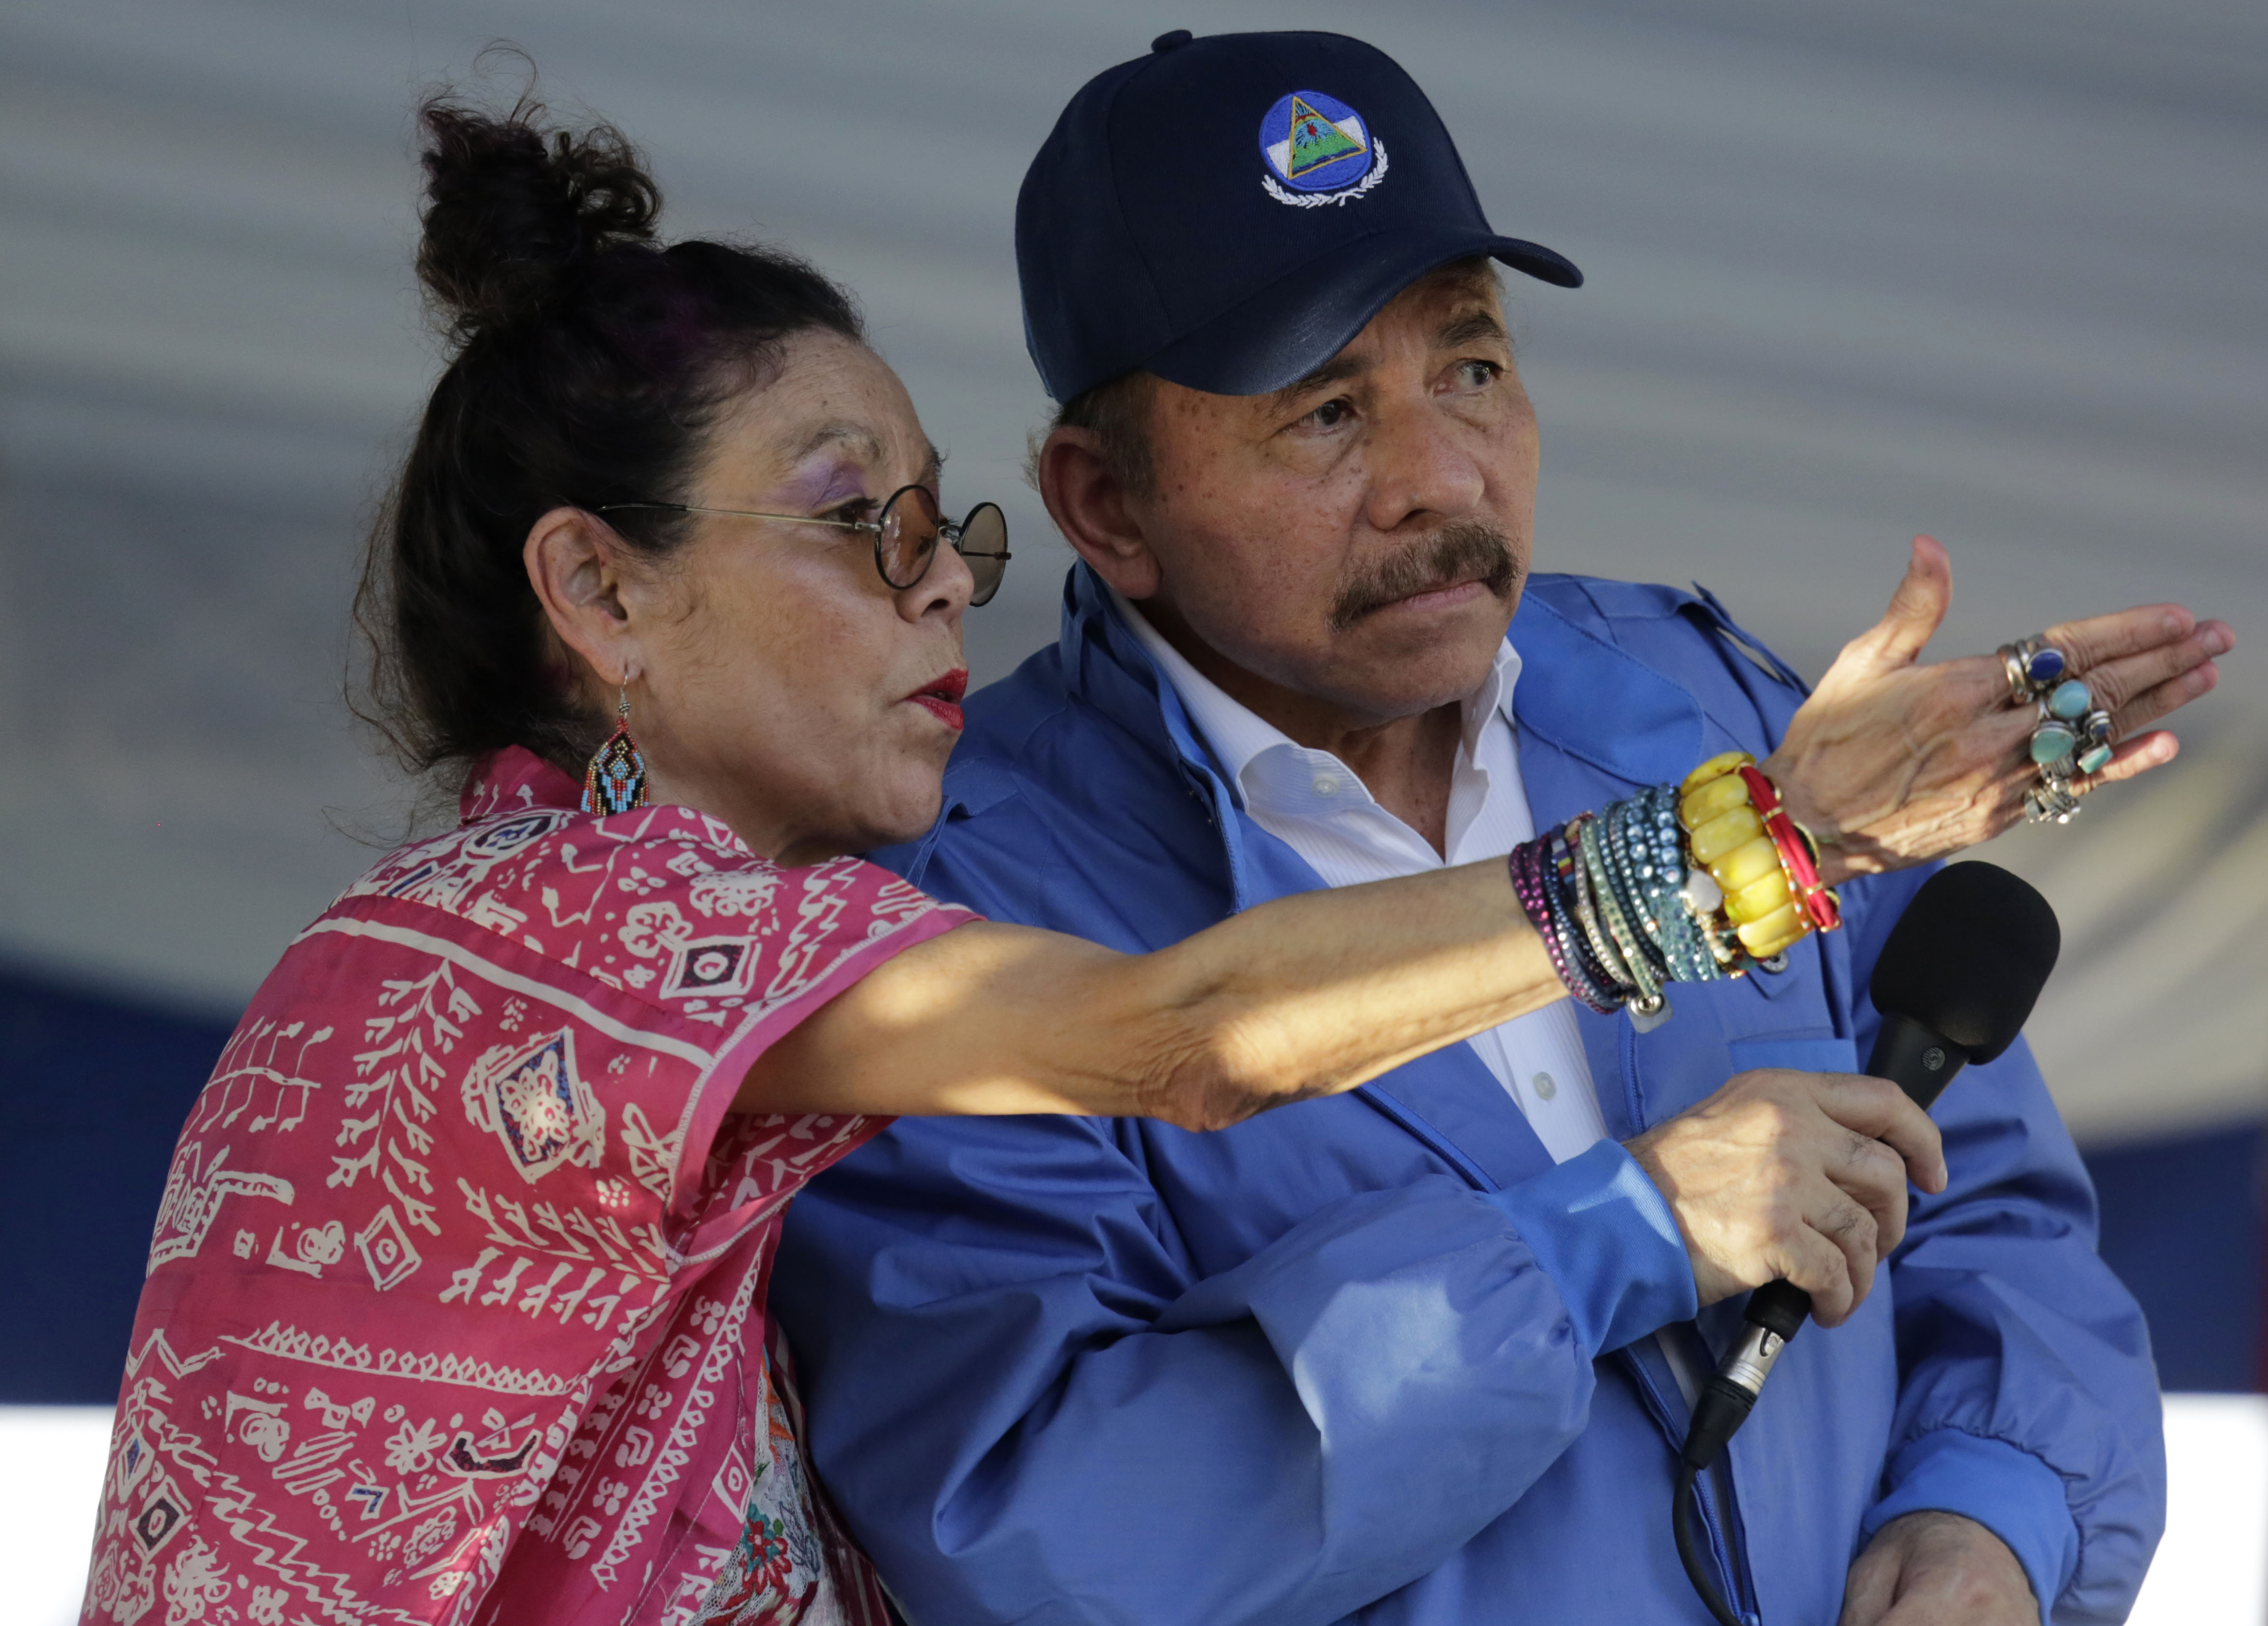 ¿Se parece igualito? En Nicaragua el diálogo entre gobierno y oposición sigue sin avances